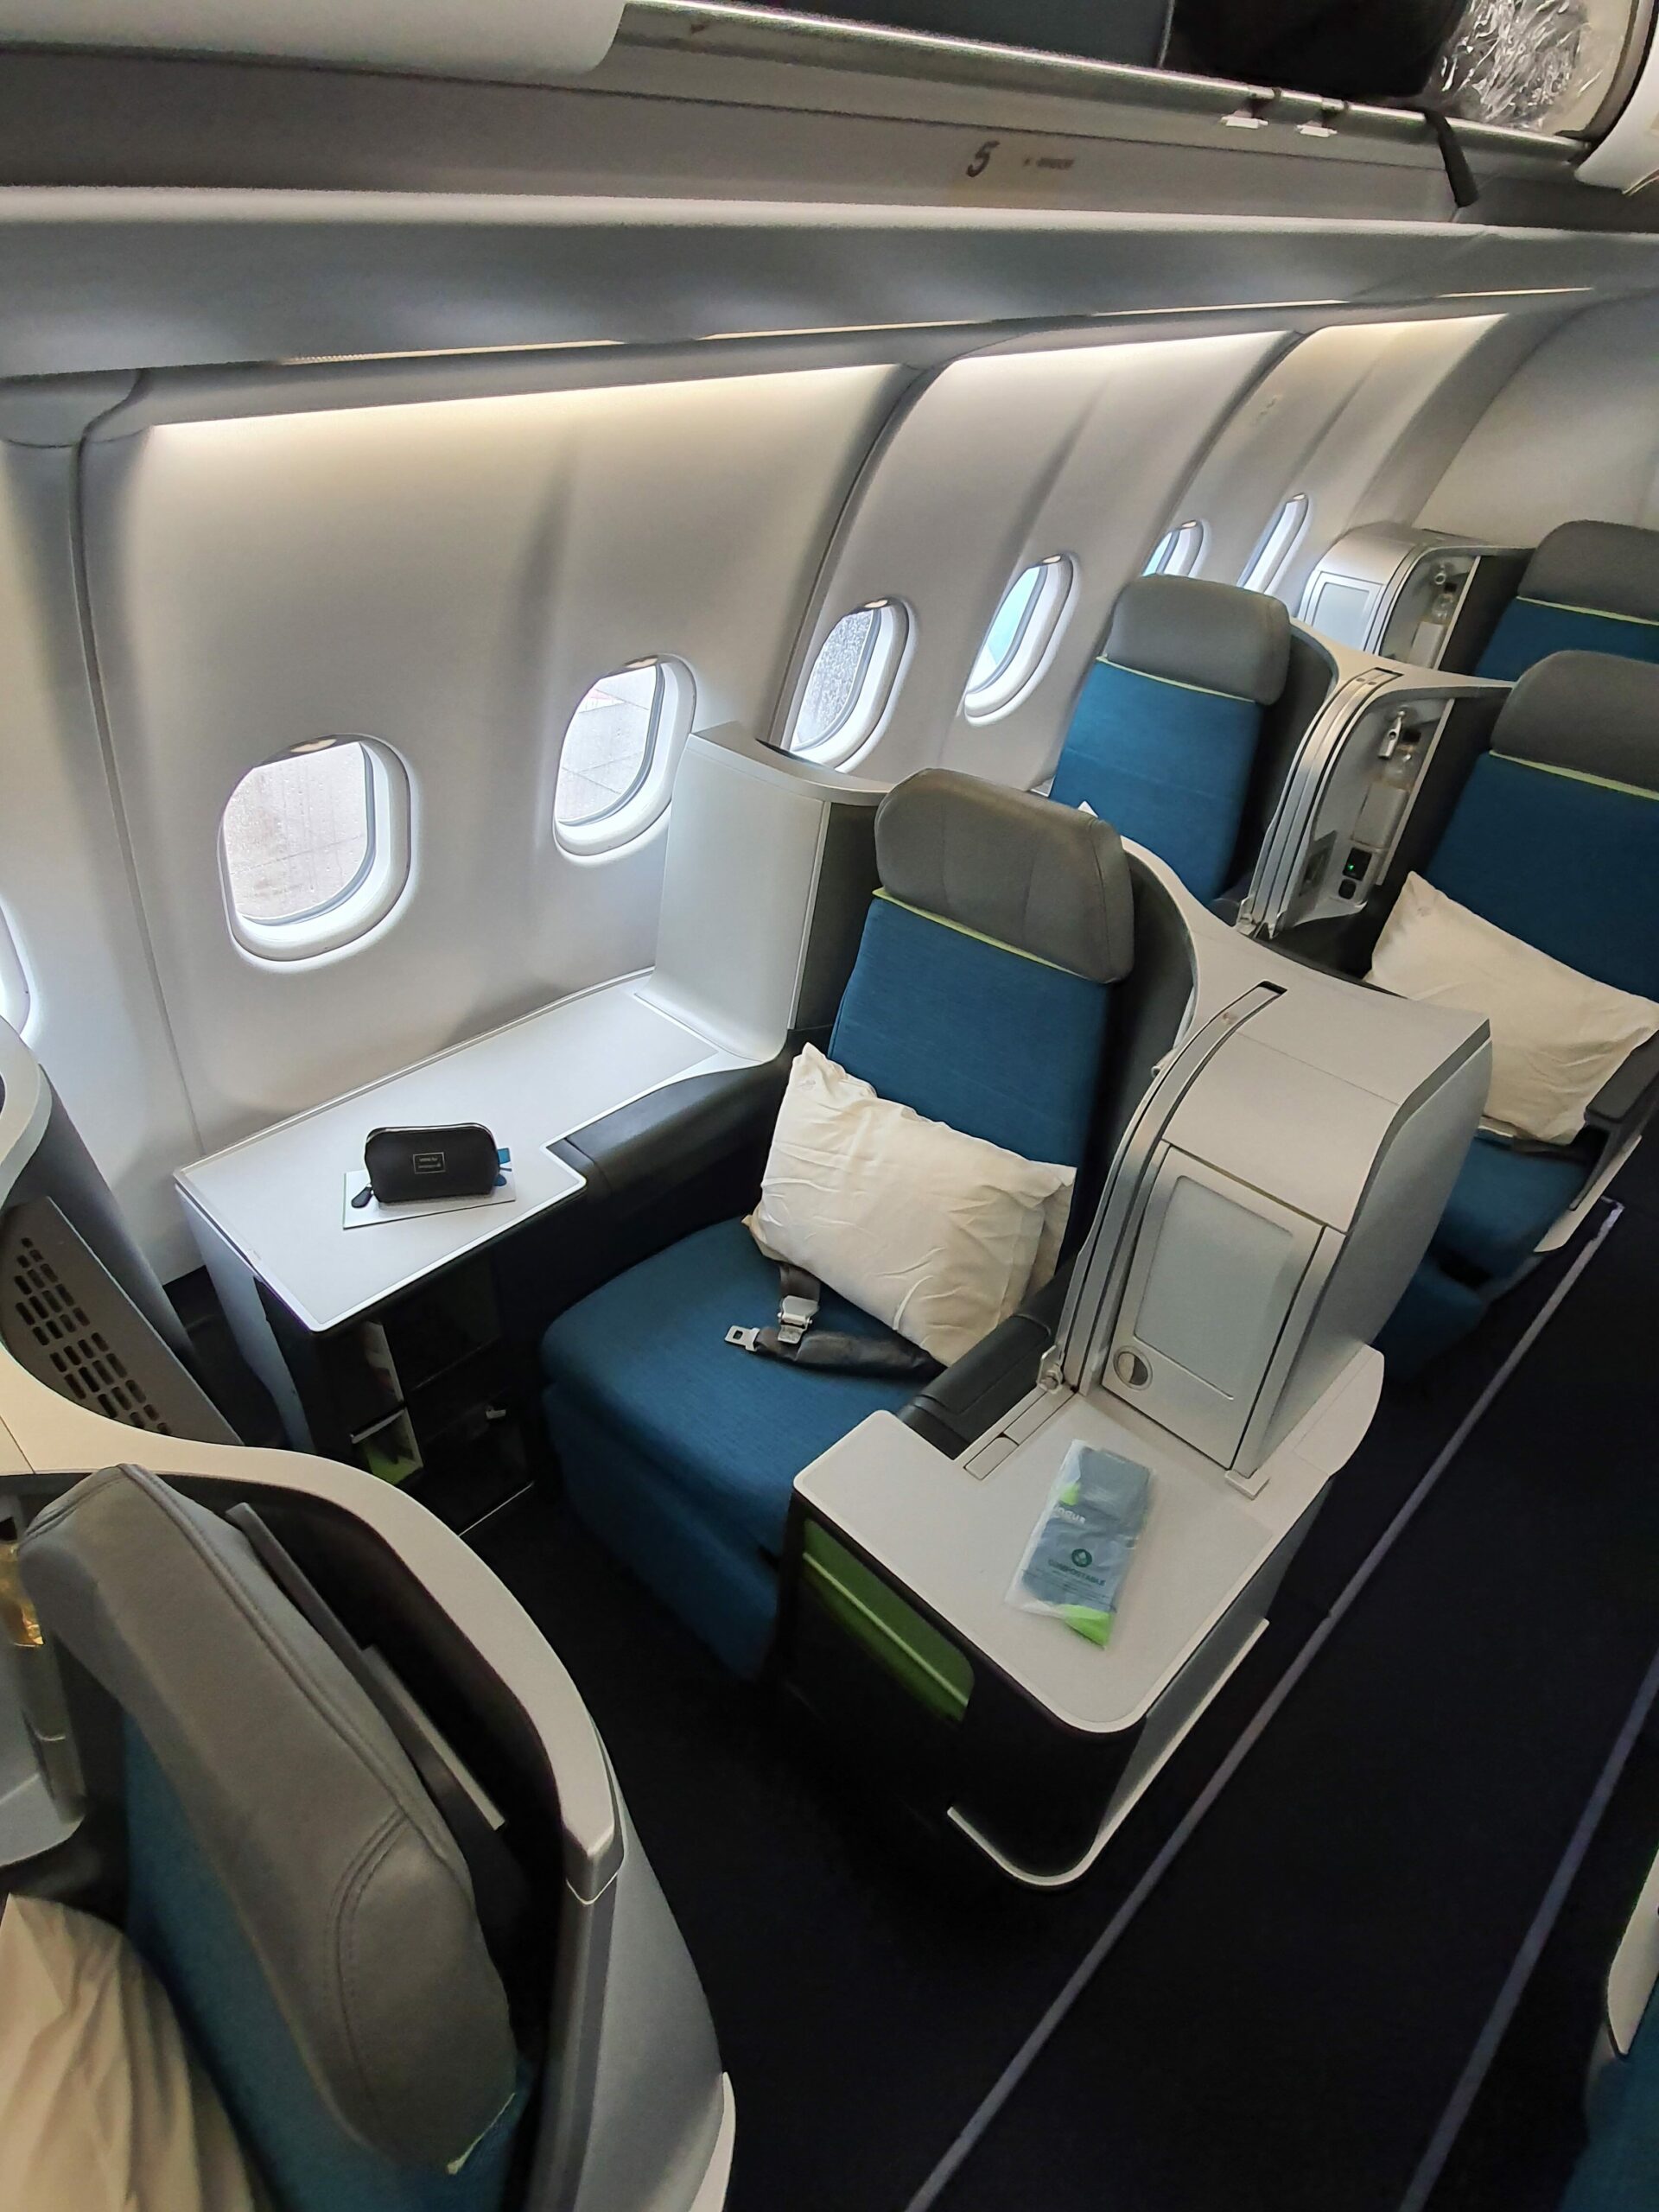 Aer Lingus A330 Maiden Flight cabin 